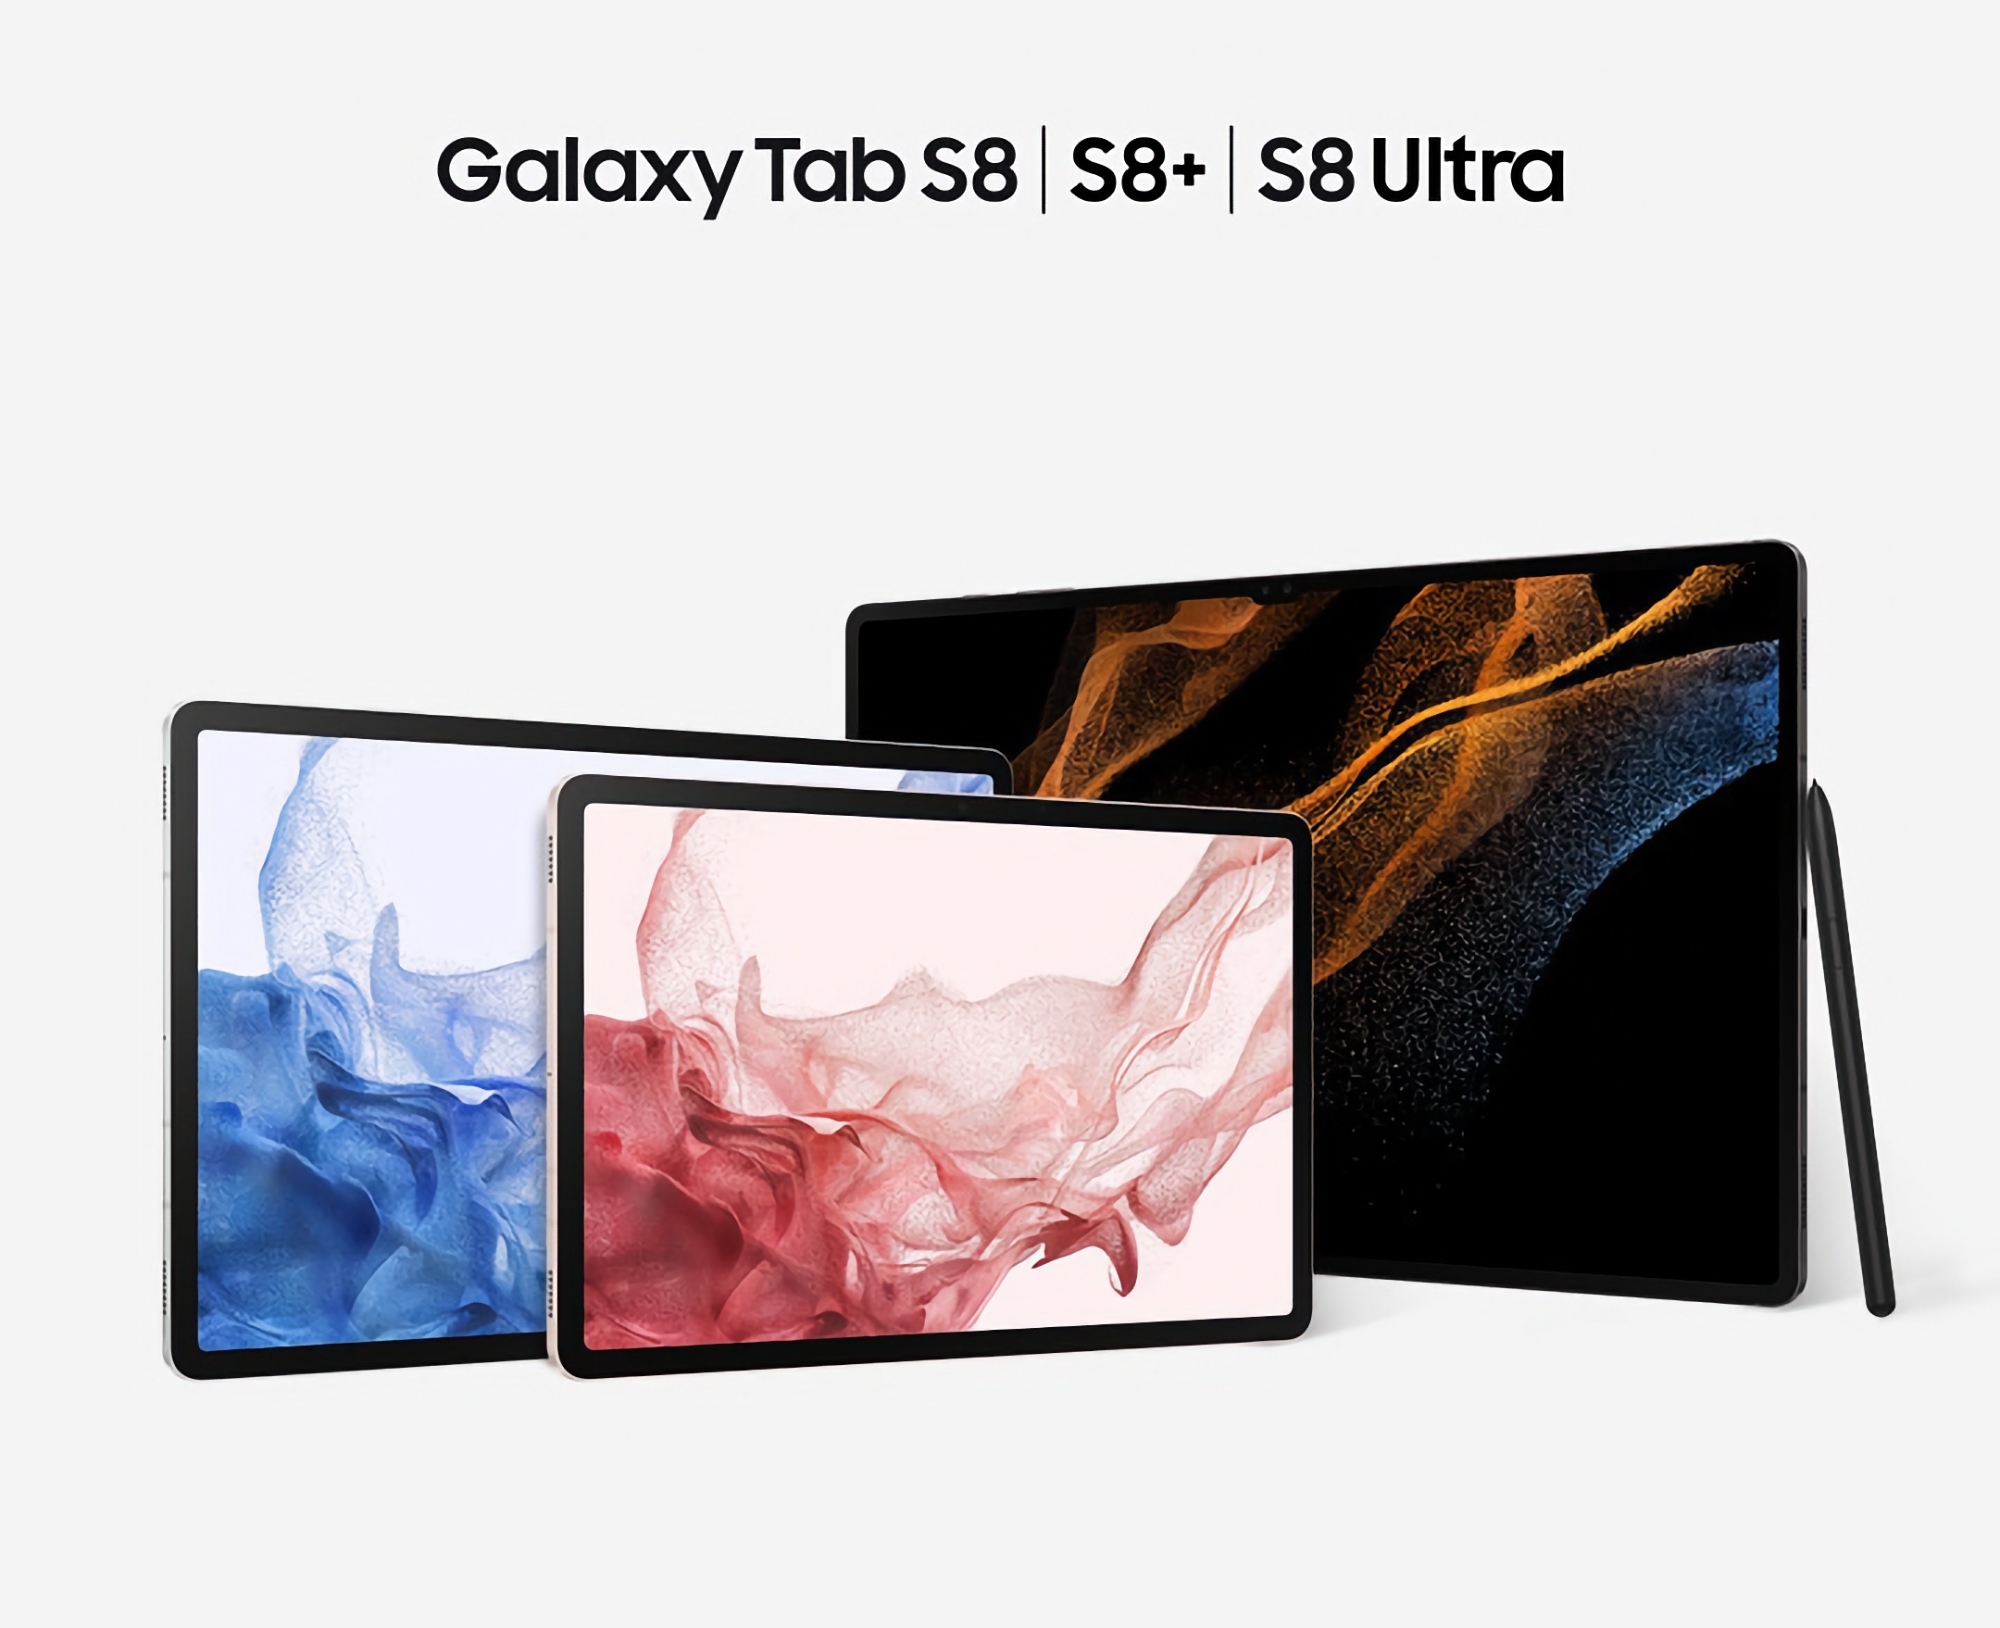 Samsung hat ein Update für das Galaxy Tab S8, Galaxy Tab S8+ und Galaxy Tab S8 Ultra veröffentlicht: Was ist neu?